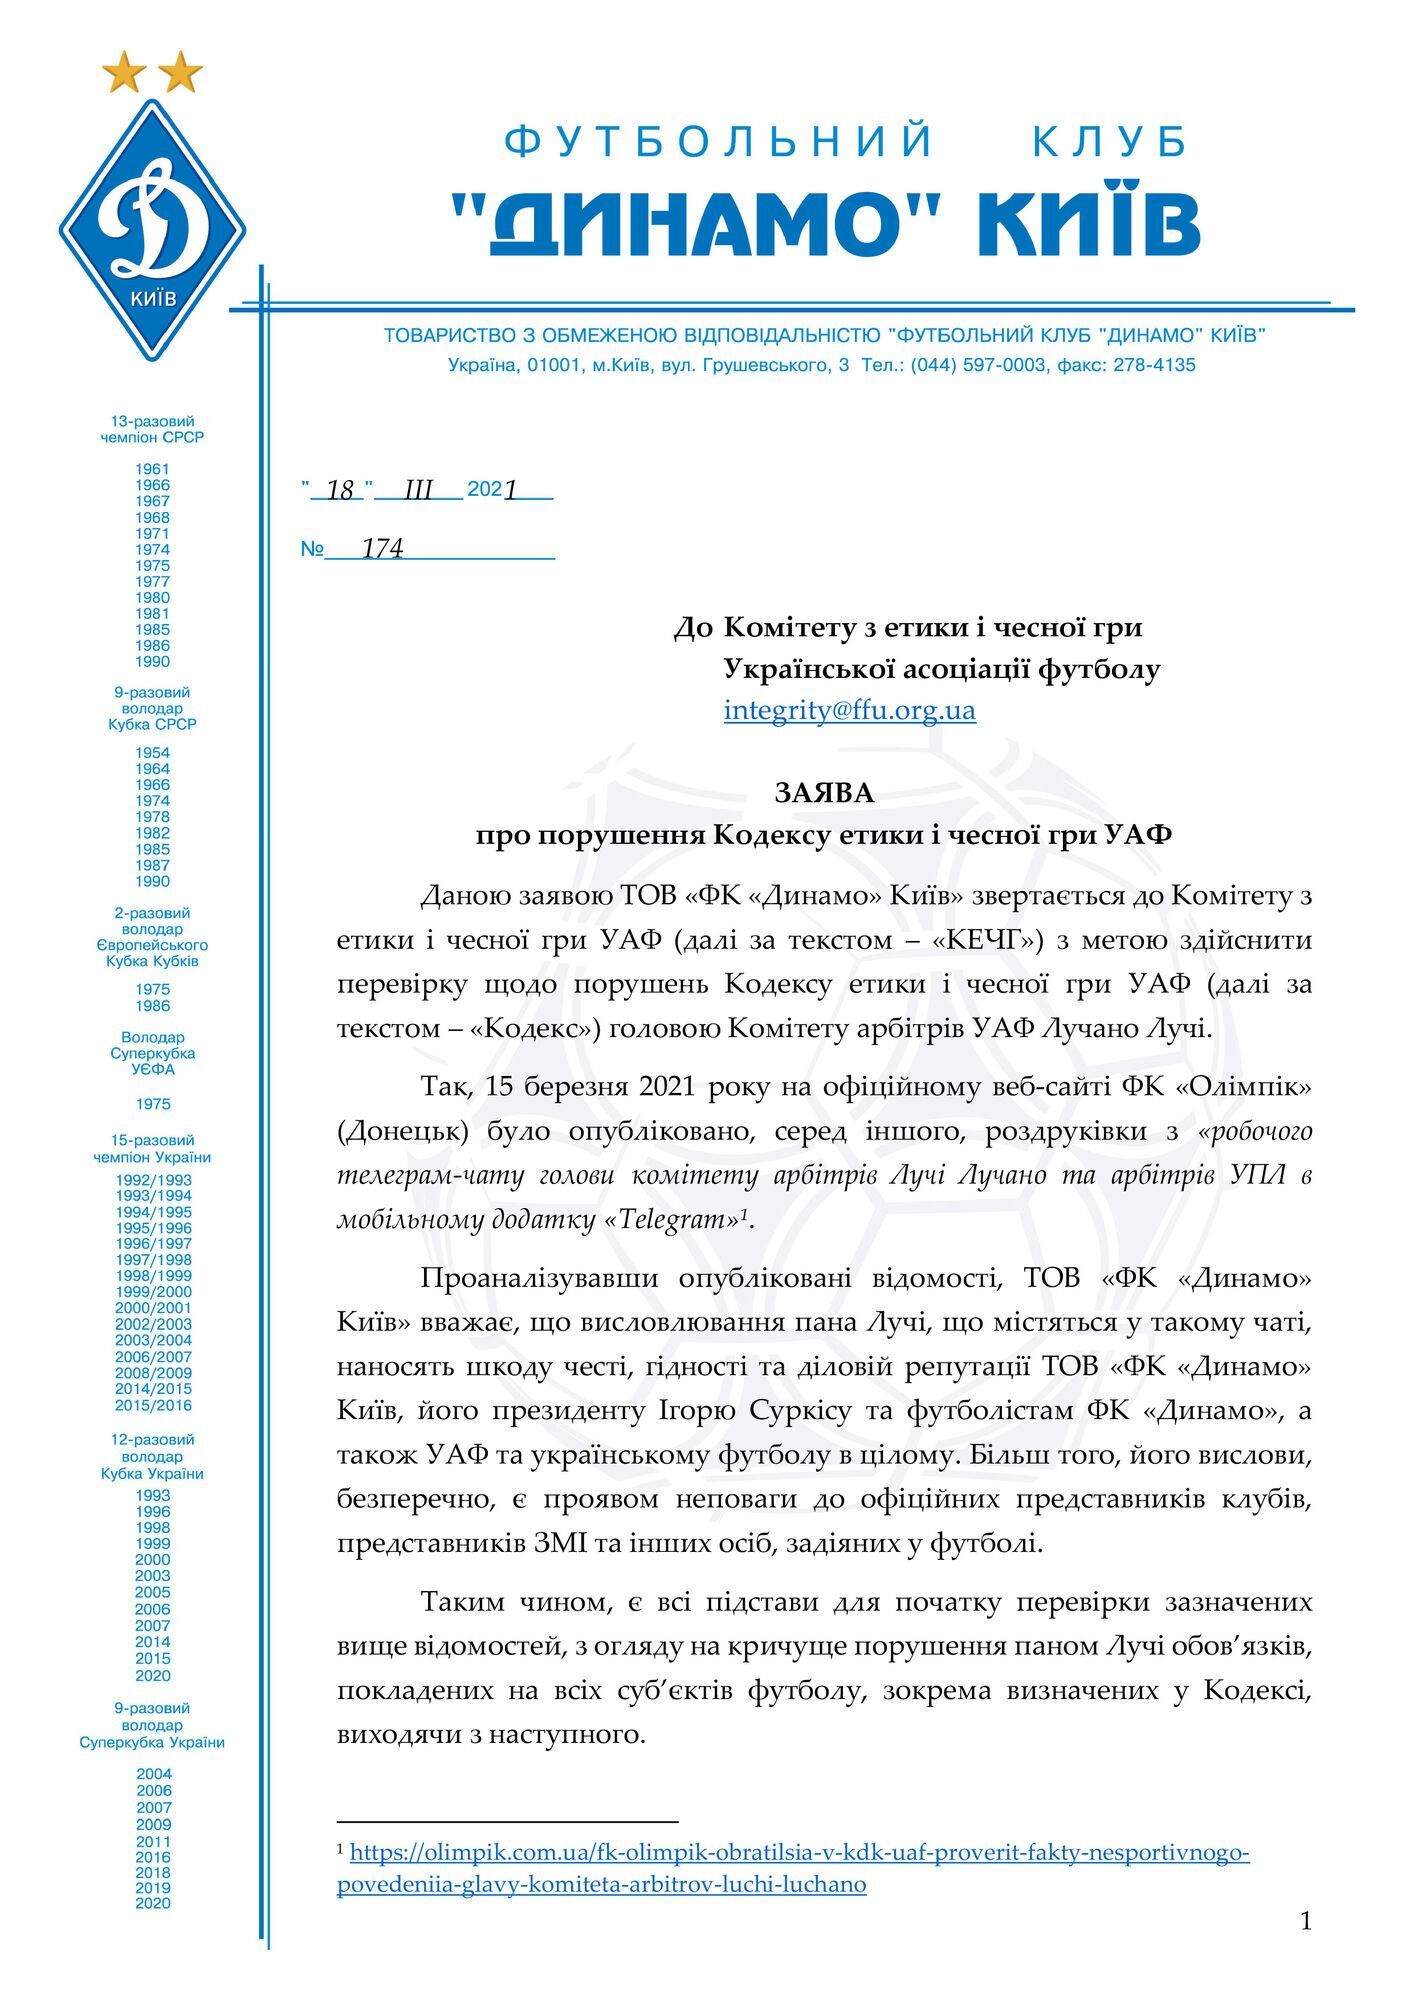 Официальное заявление "Динамо", страница 1